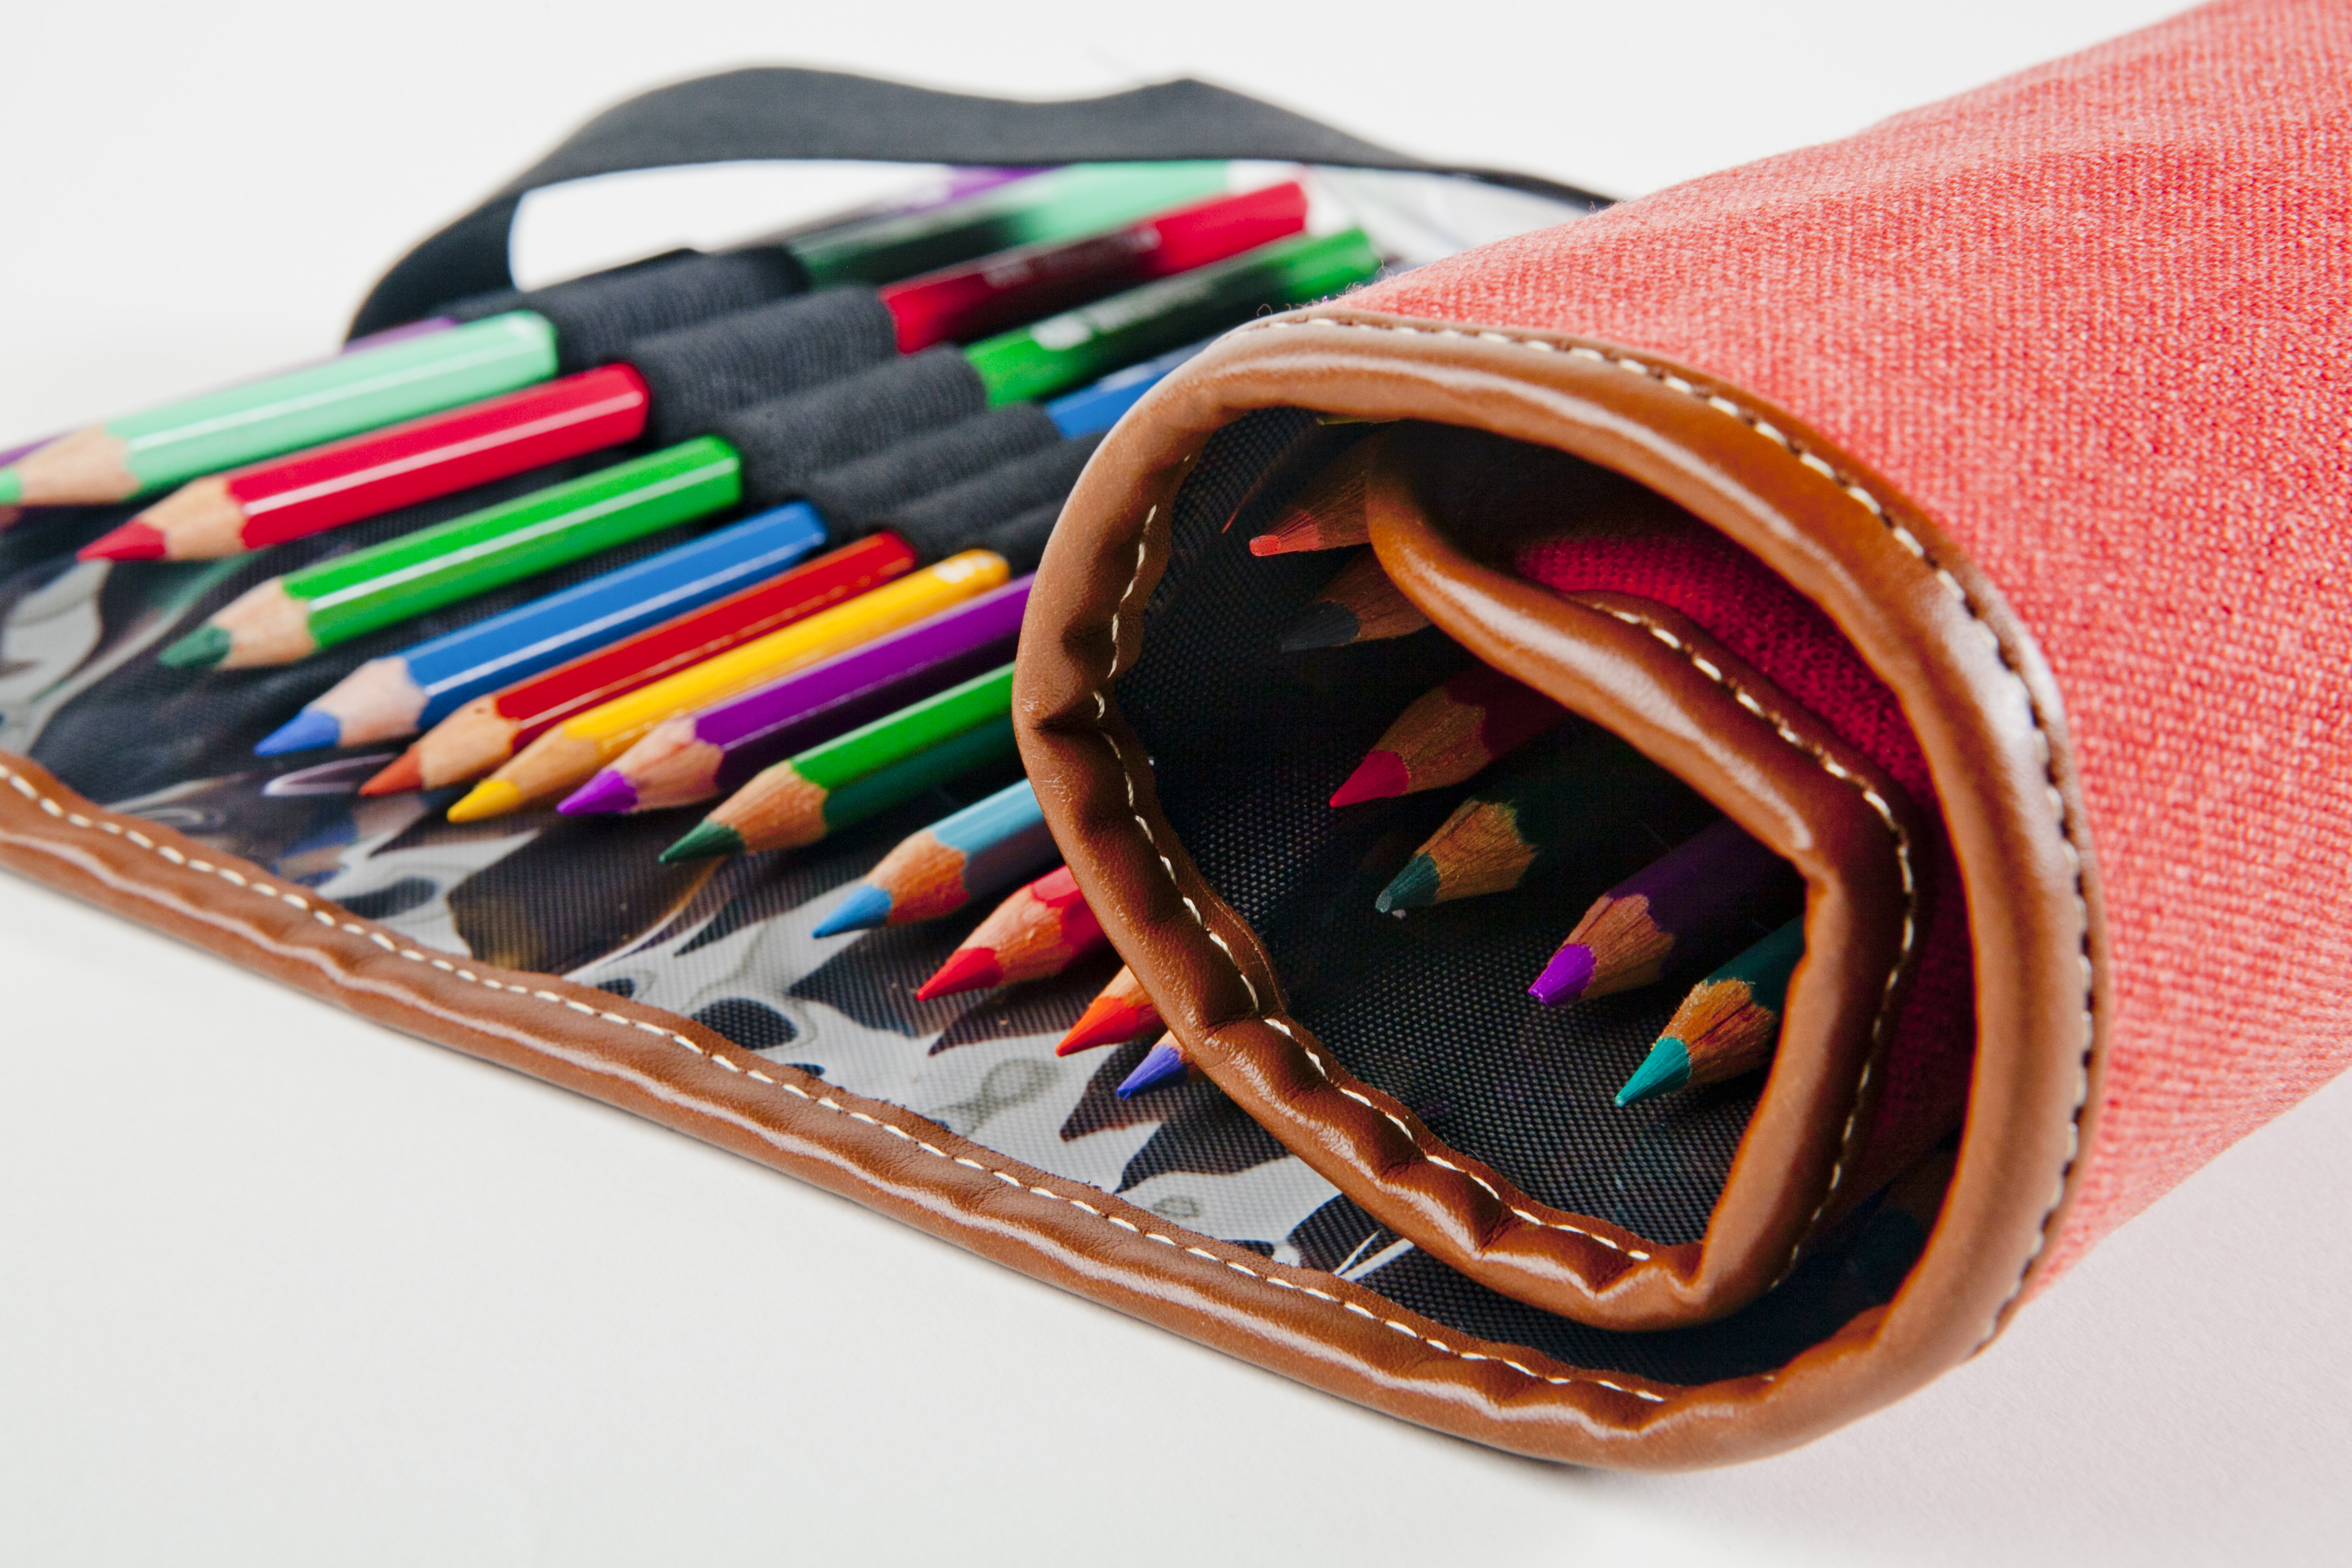 Pencil Cases, Designer Art Pencil Case